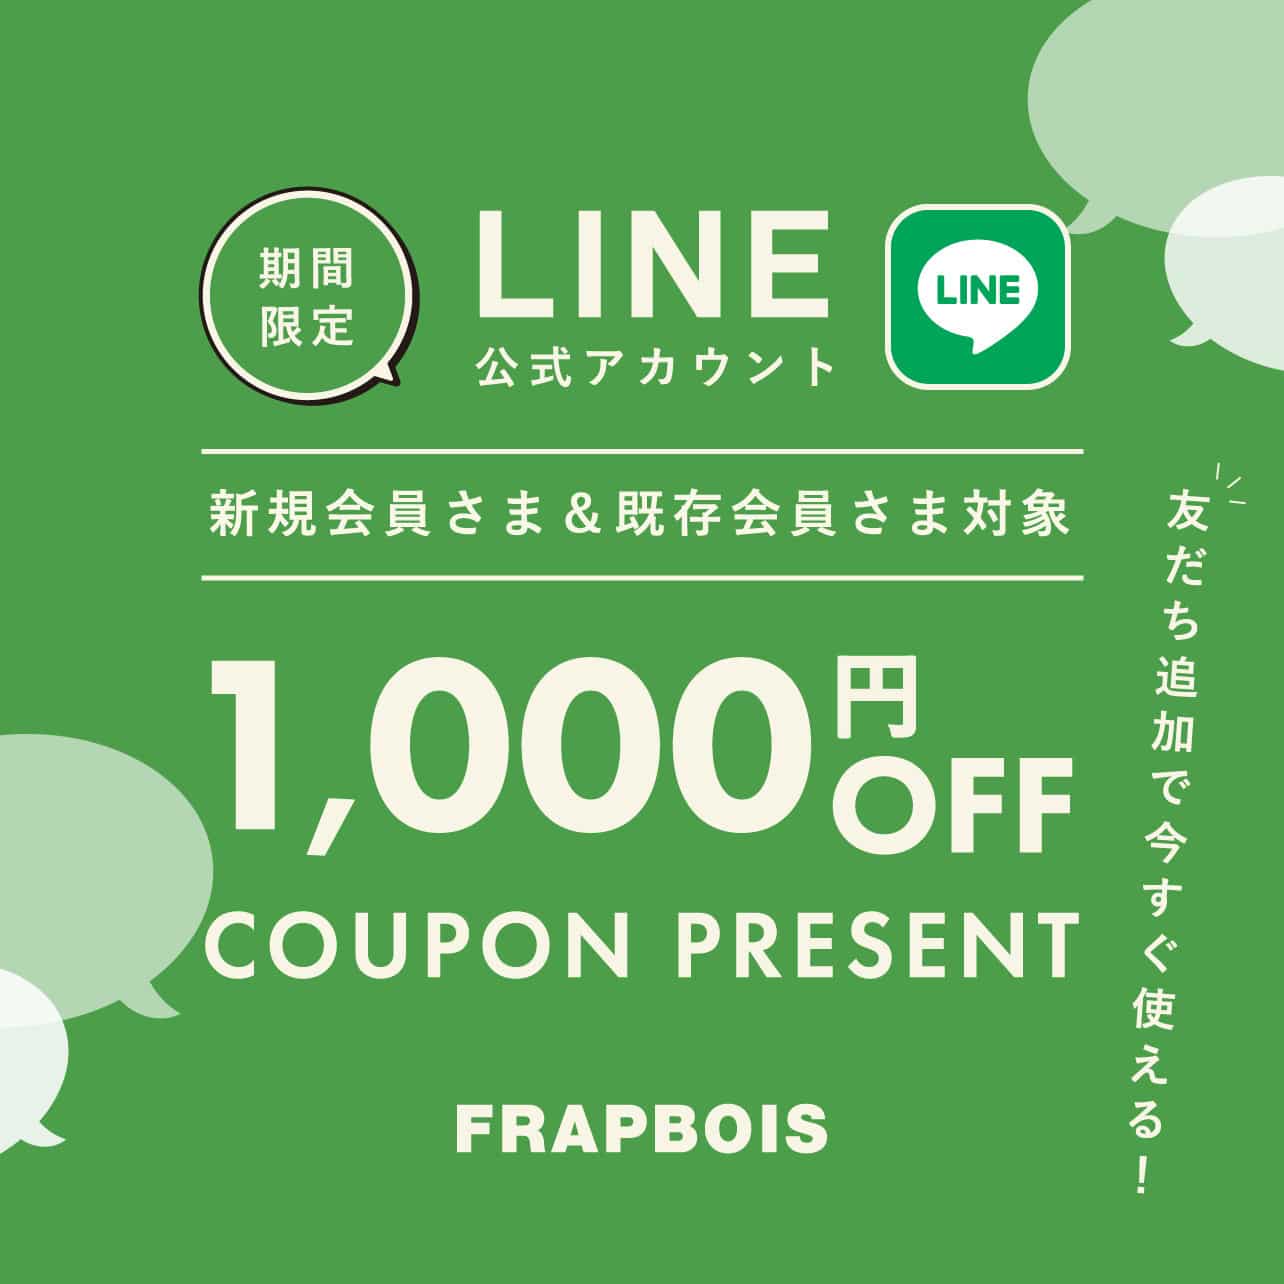 FRAPBOIS公式LINEアカウント 友だちキャンペーン